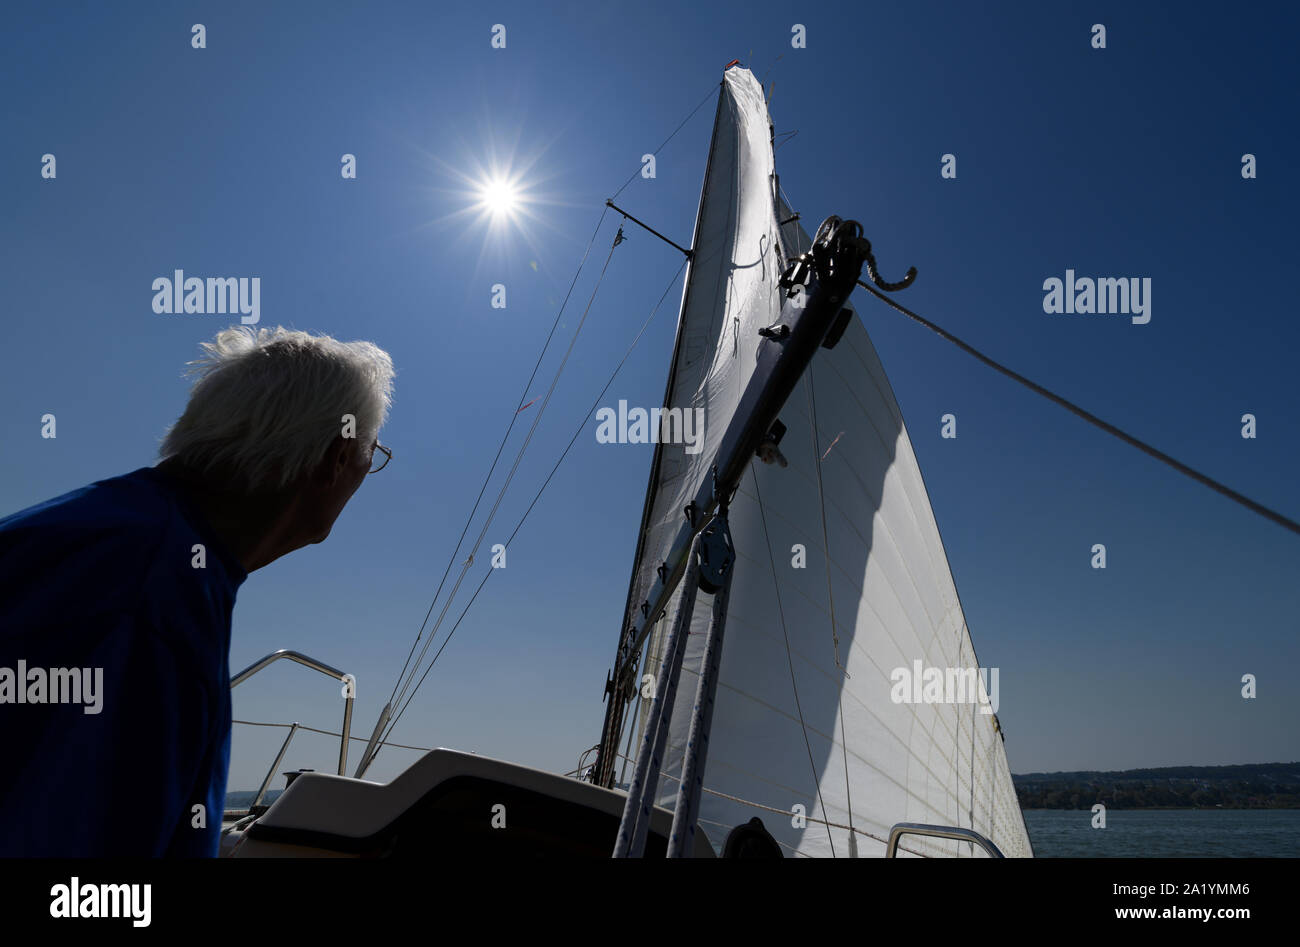 Active senior sailer enjoying sailing boat trip on his sailboat Stock Photo